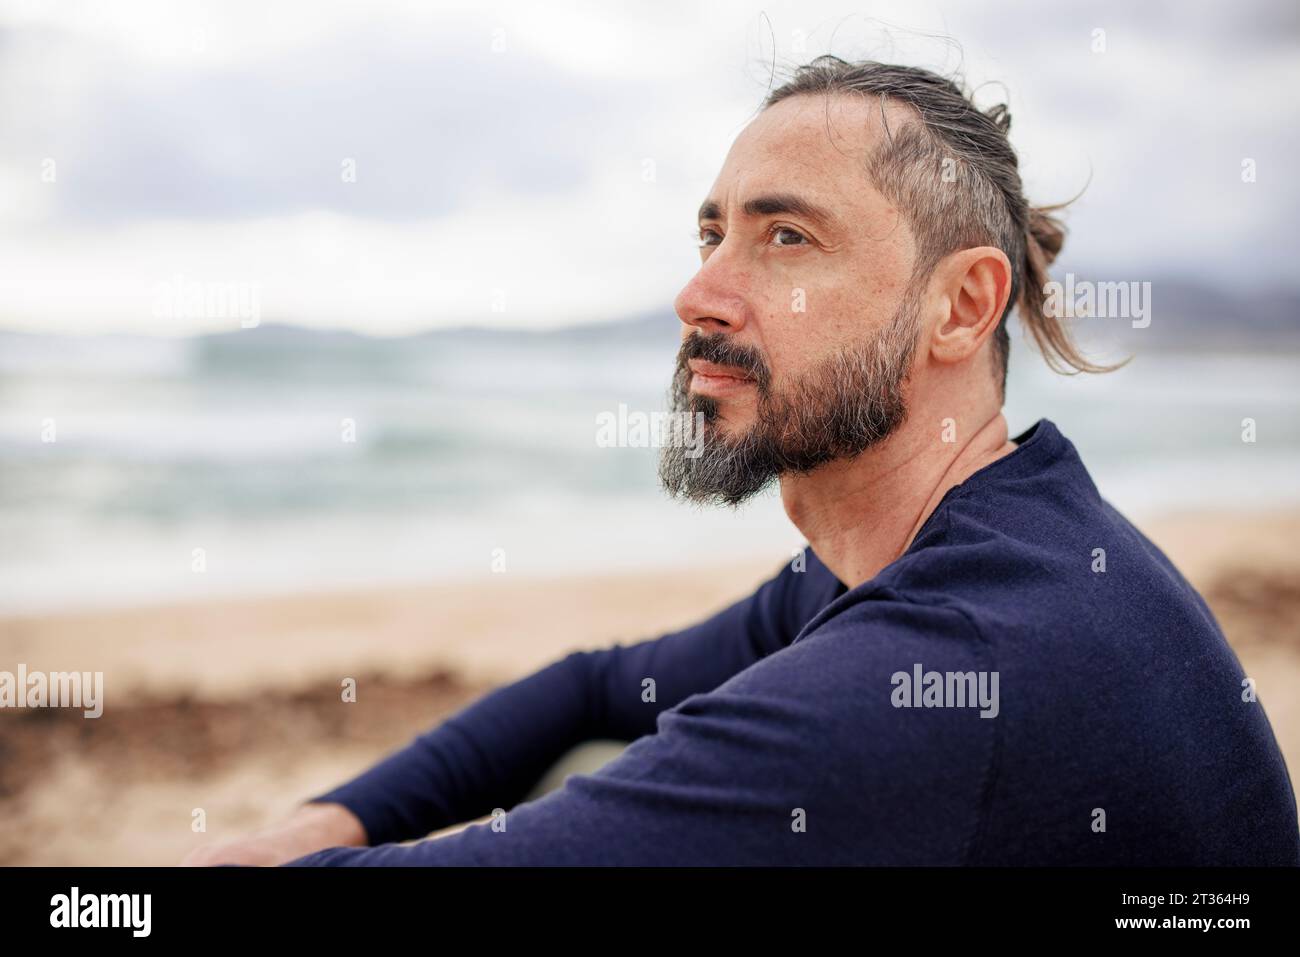 Hombre contemplativo con camiseta azul en la playa Foto de stock